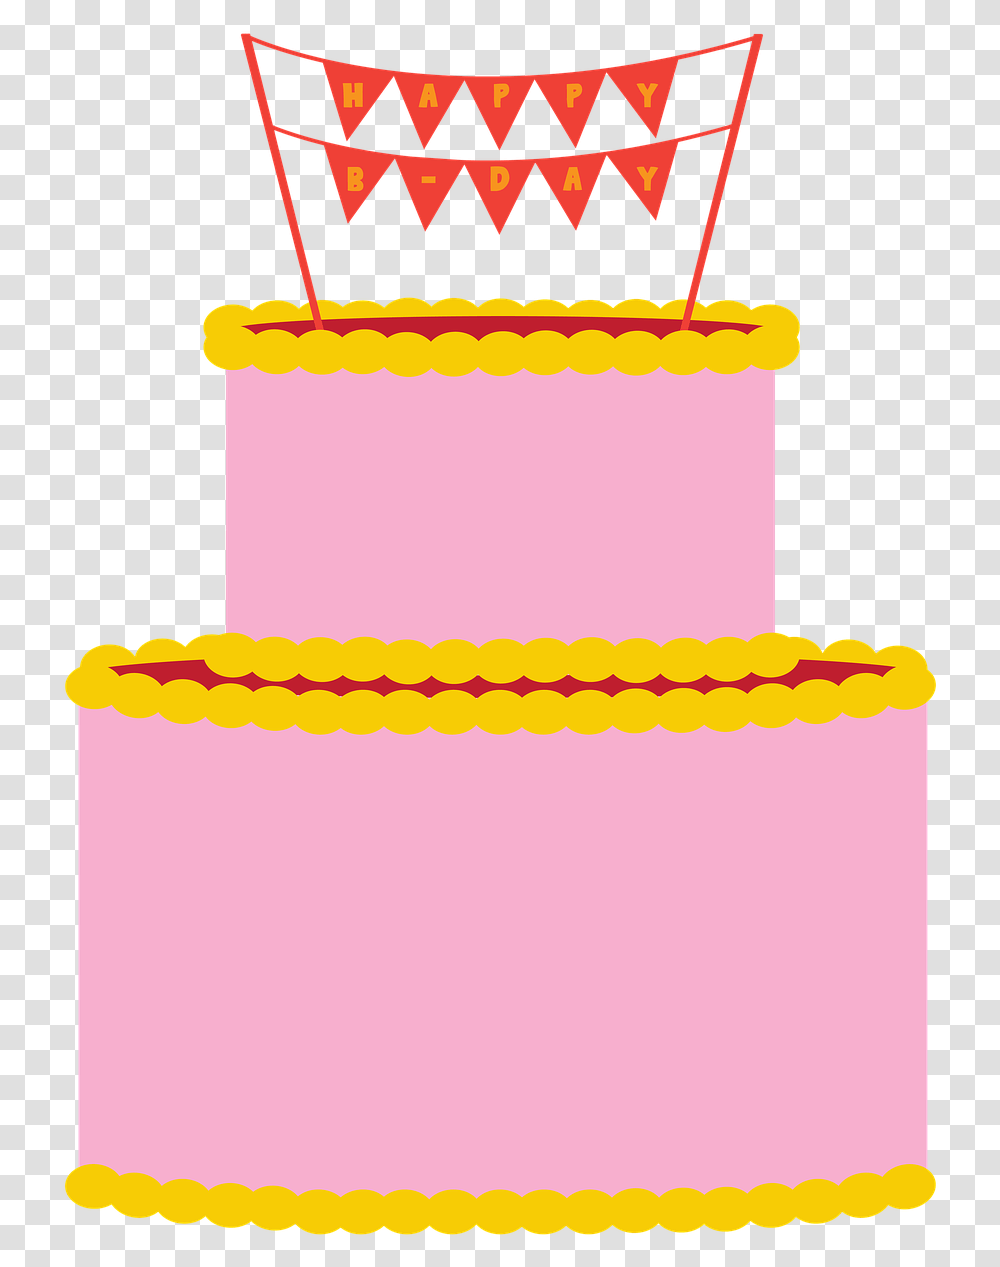 Ilustrasi Kue Ulang Tahun, Cake, Dessert, Food, Birthday Cake Transparent Png